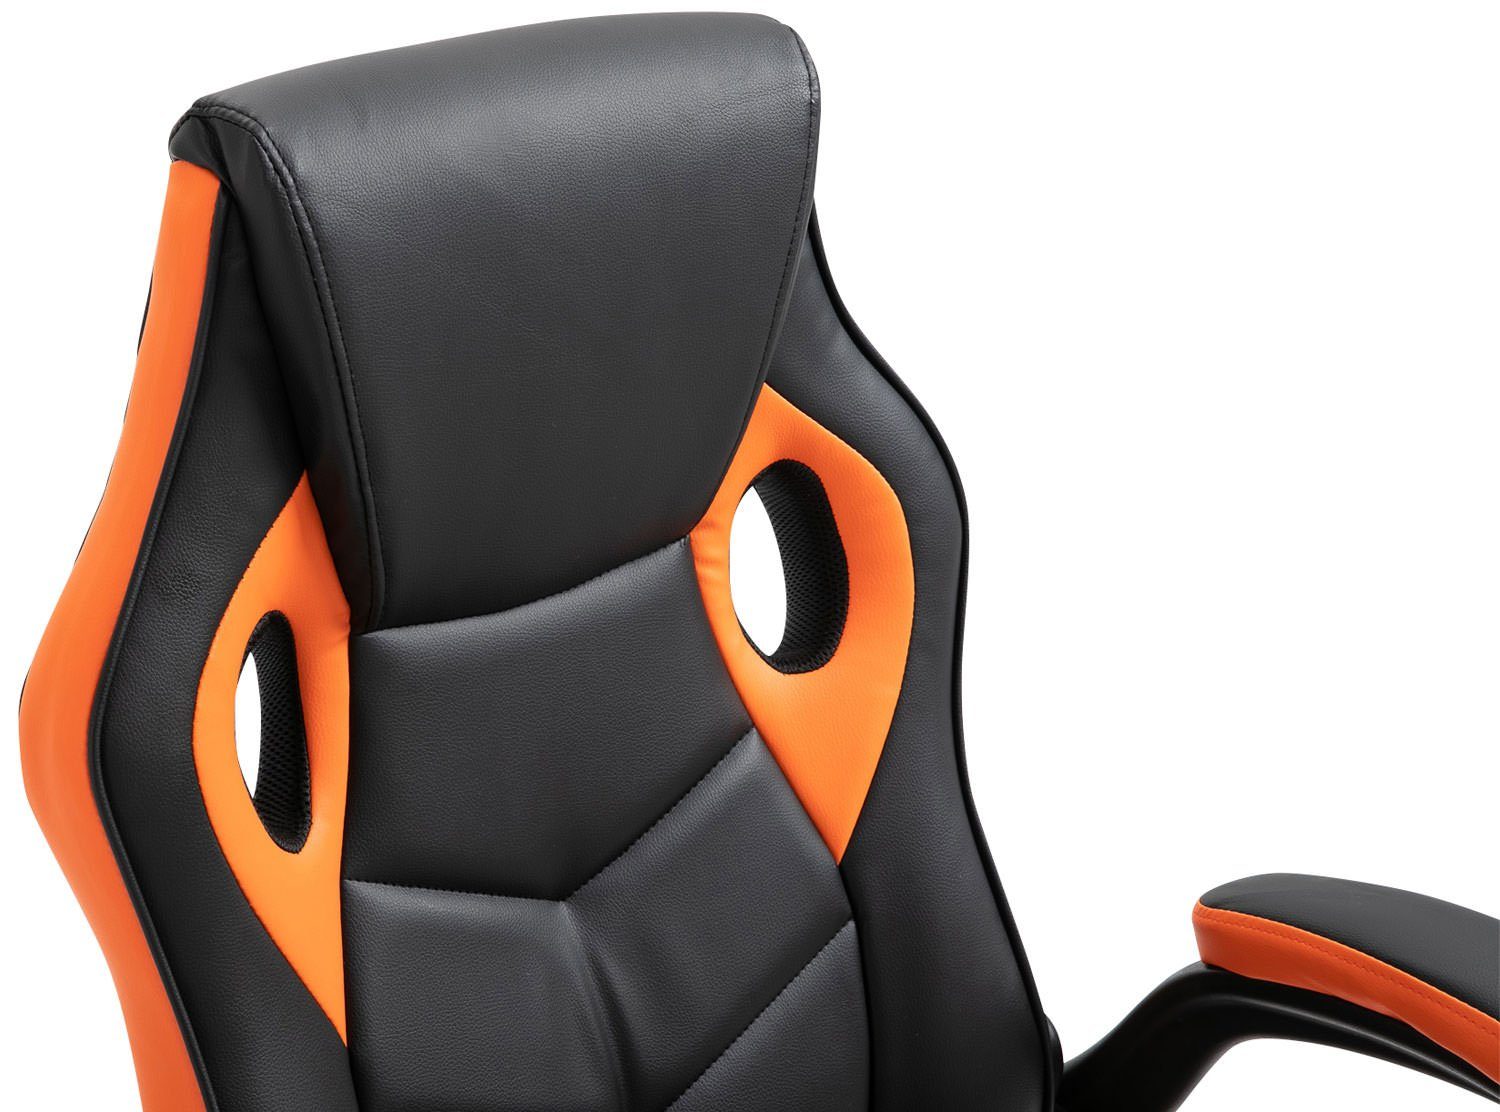 Omis höhenverstellbar Chair Kunstleder, CLP und Gaming drehbar schwarz/orange